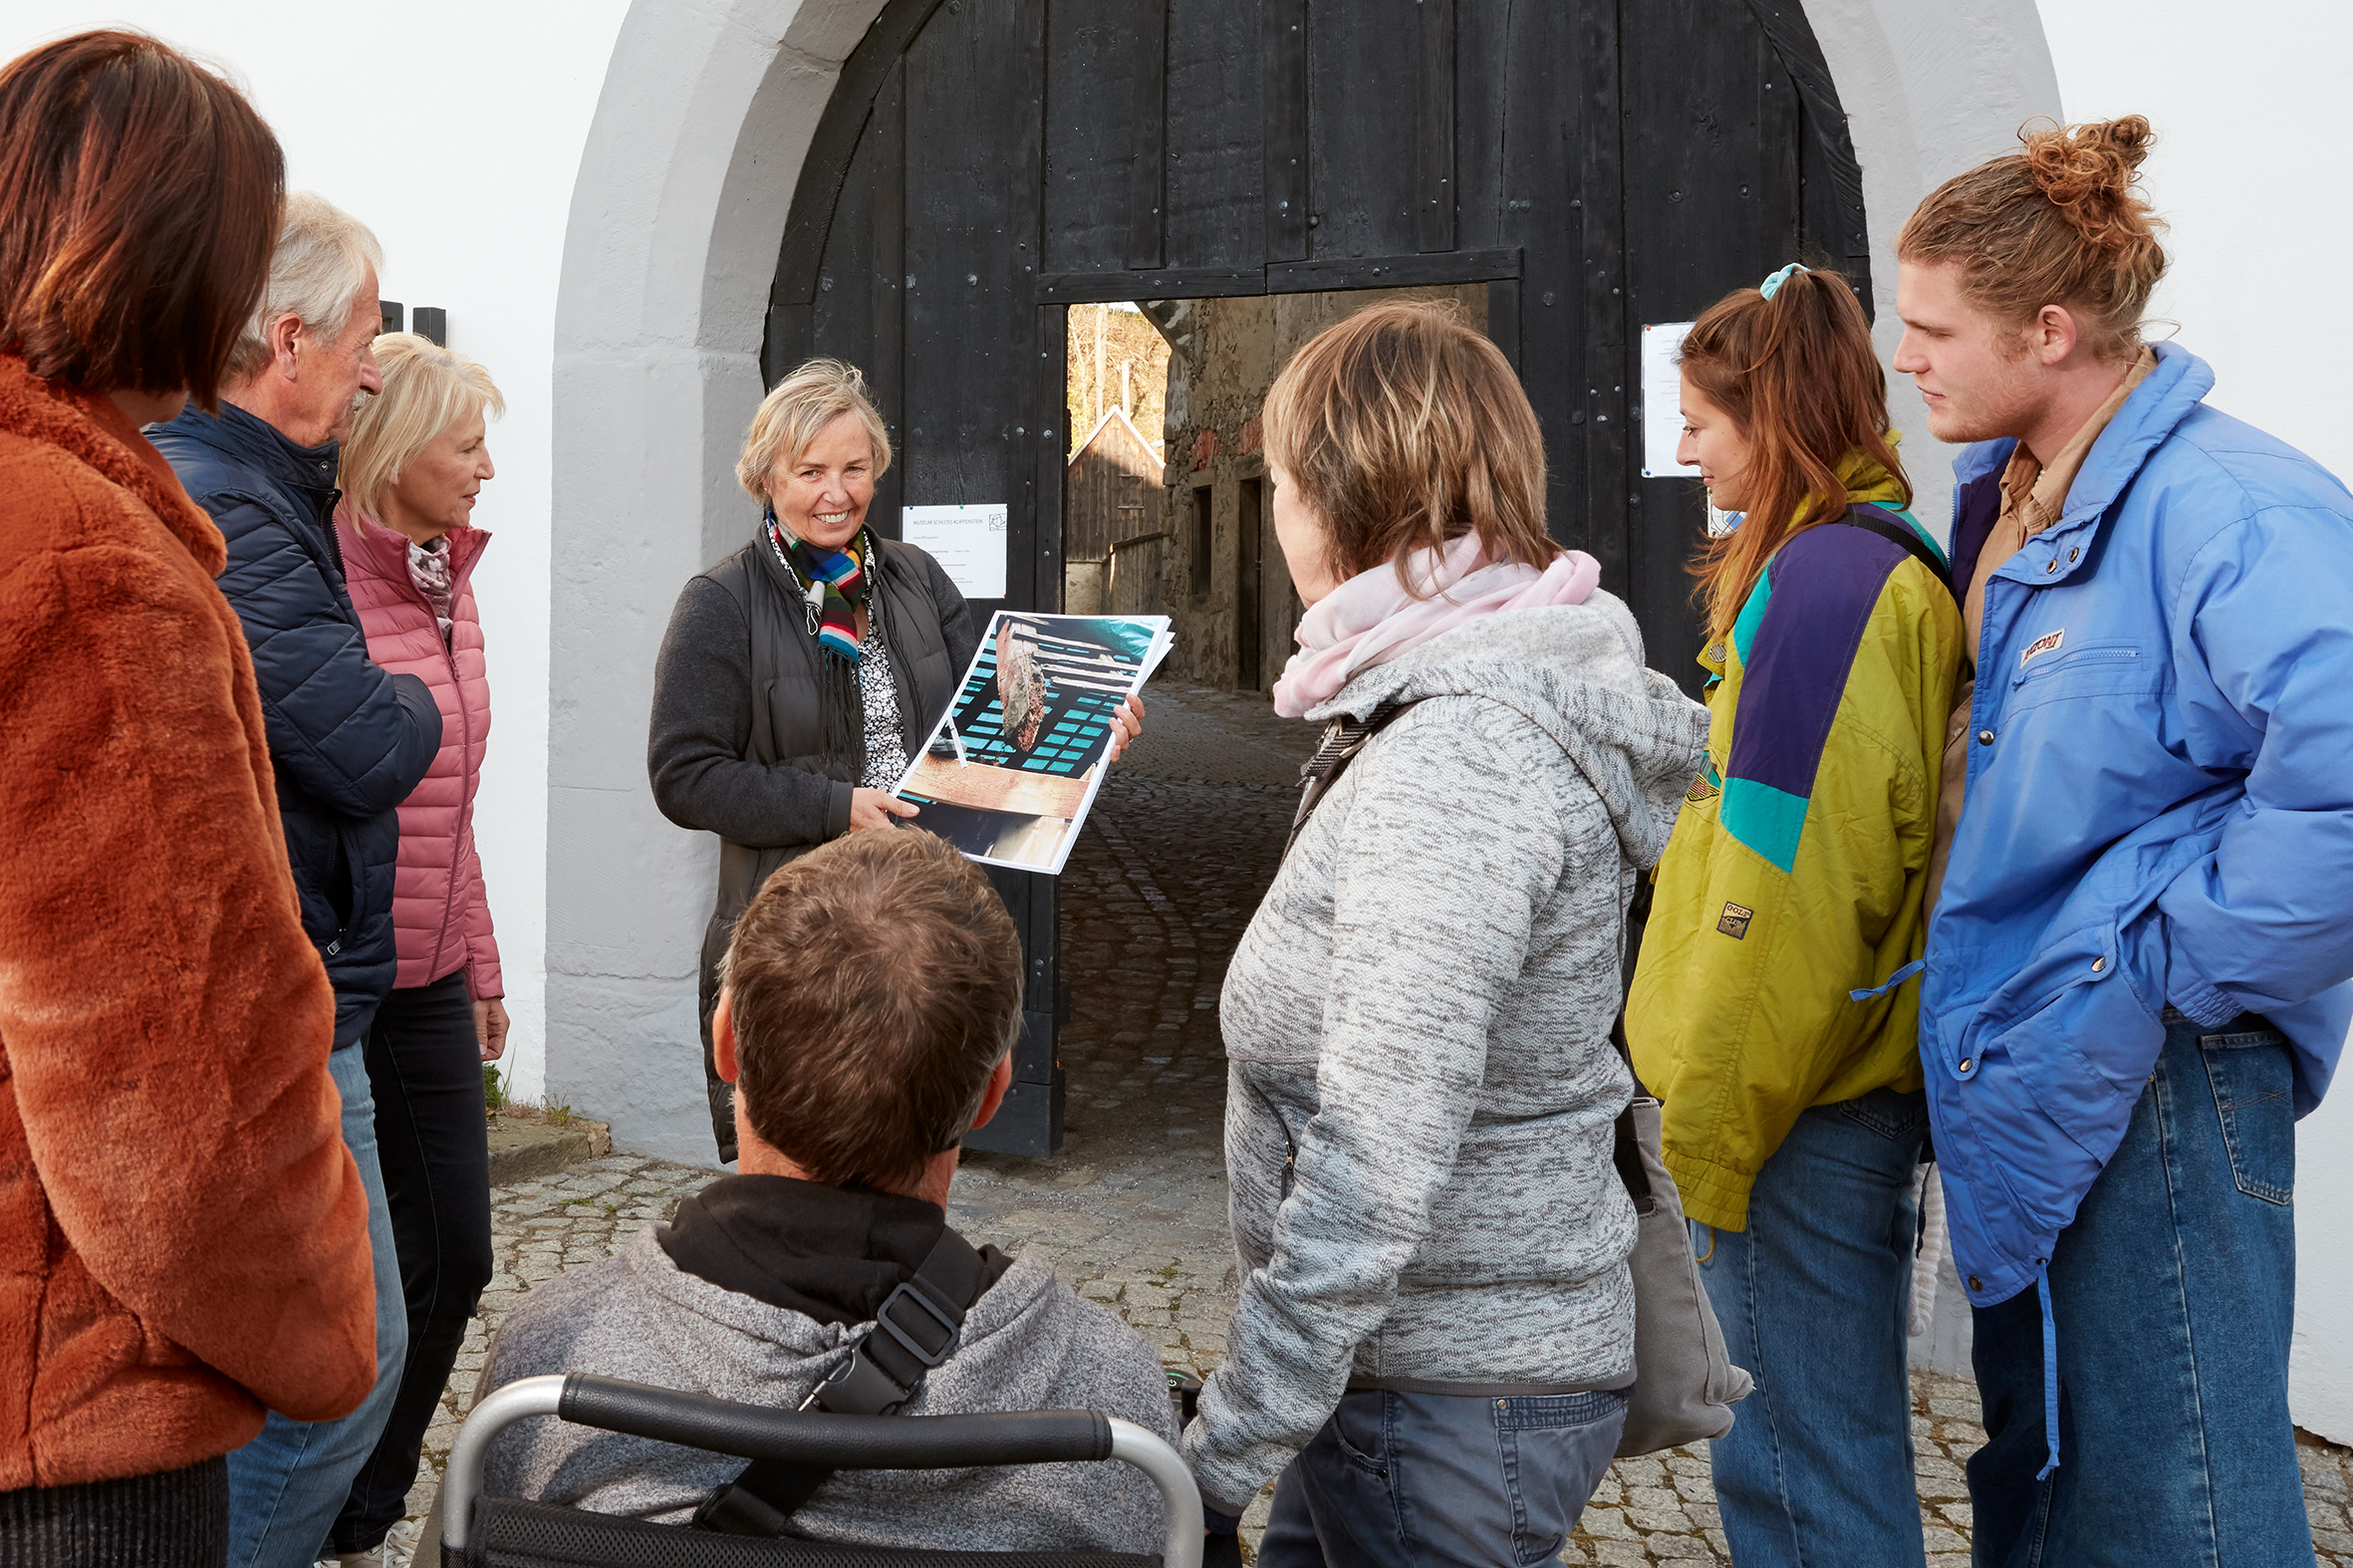 Die Schlossleiterin steht mit einer Gruppe von Besuchern vor dem großen Schlosstor. Durch die geöffnete Tür in der Mitte des schwarzen Tores kann man in den sonnigen Schlosshof sehen.